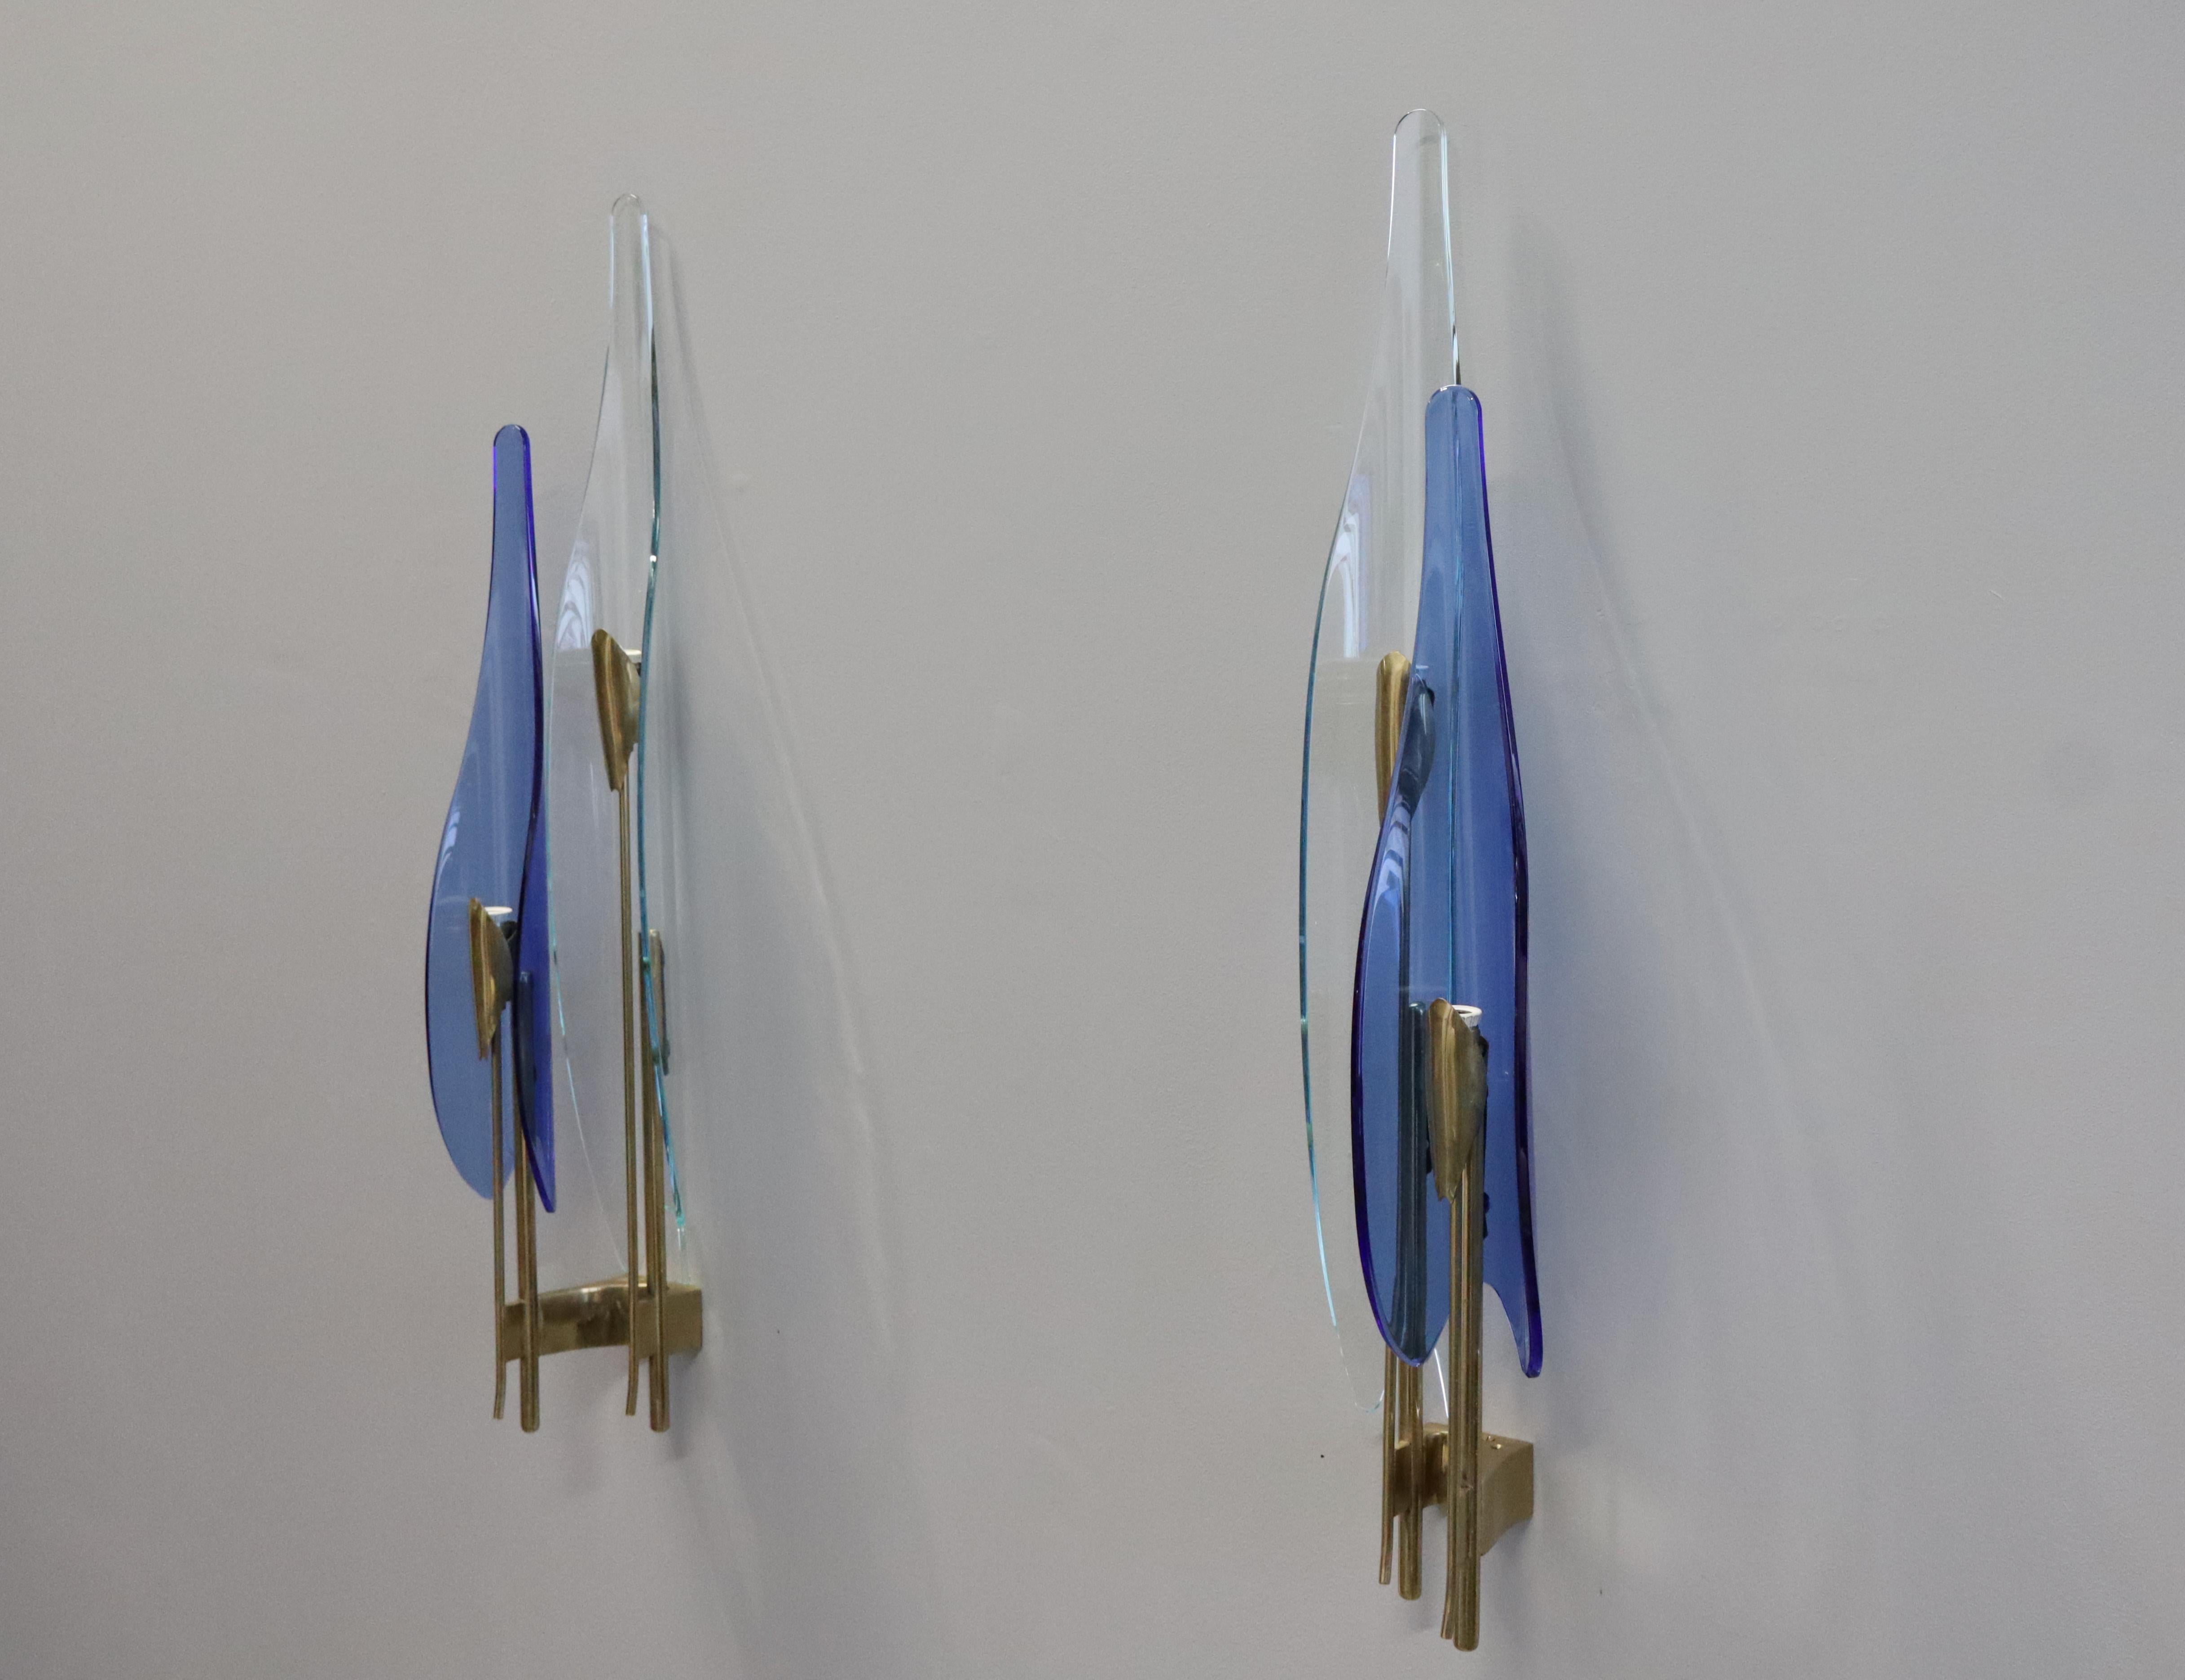 Quattro applique 'Dahlia' di Max Ingrand per Fontana Arte. Modell #1461. 
Dieses Modell umfasst ein rotes blaues und ein dreifarbiges Vetro. 
Le appliques sono nelle loro condizioni originali. Non è stato effettuato alcun restauro. Tutte le parti